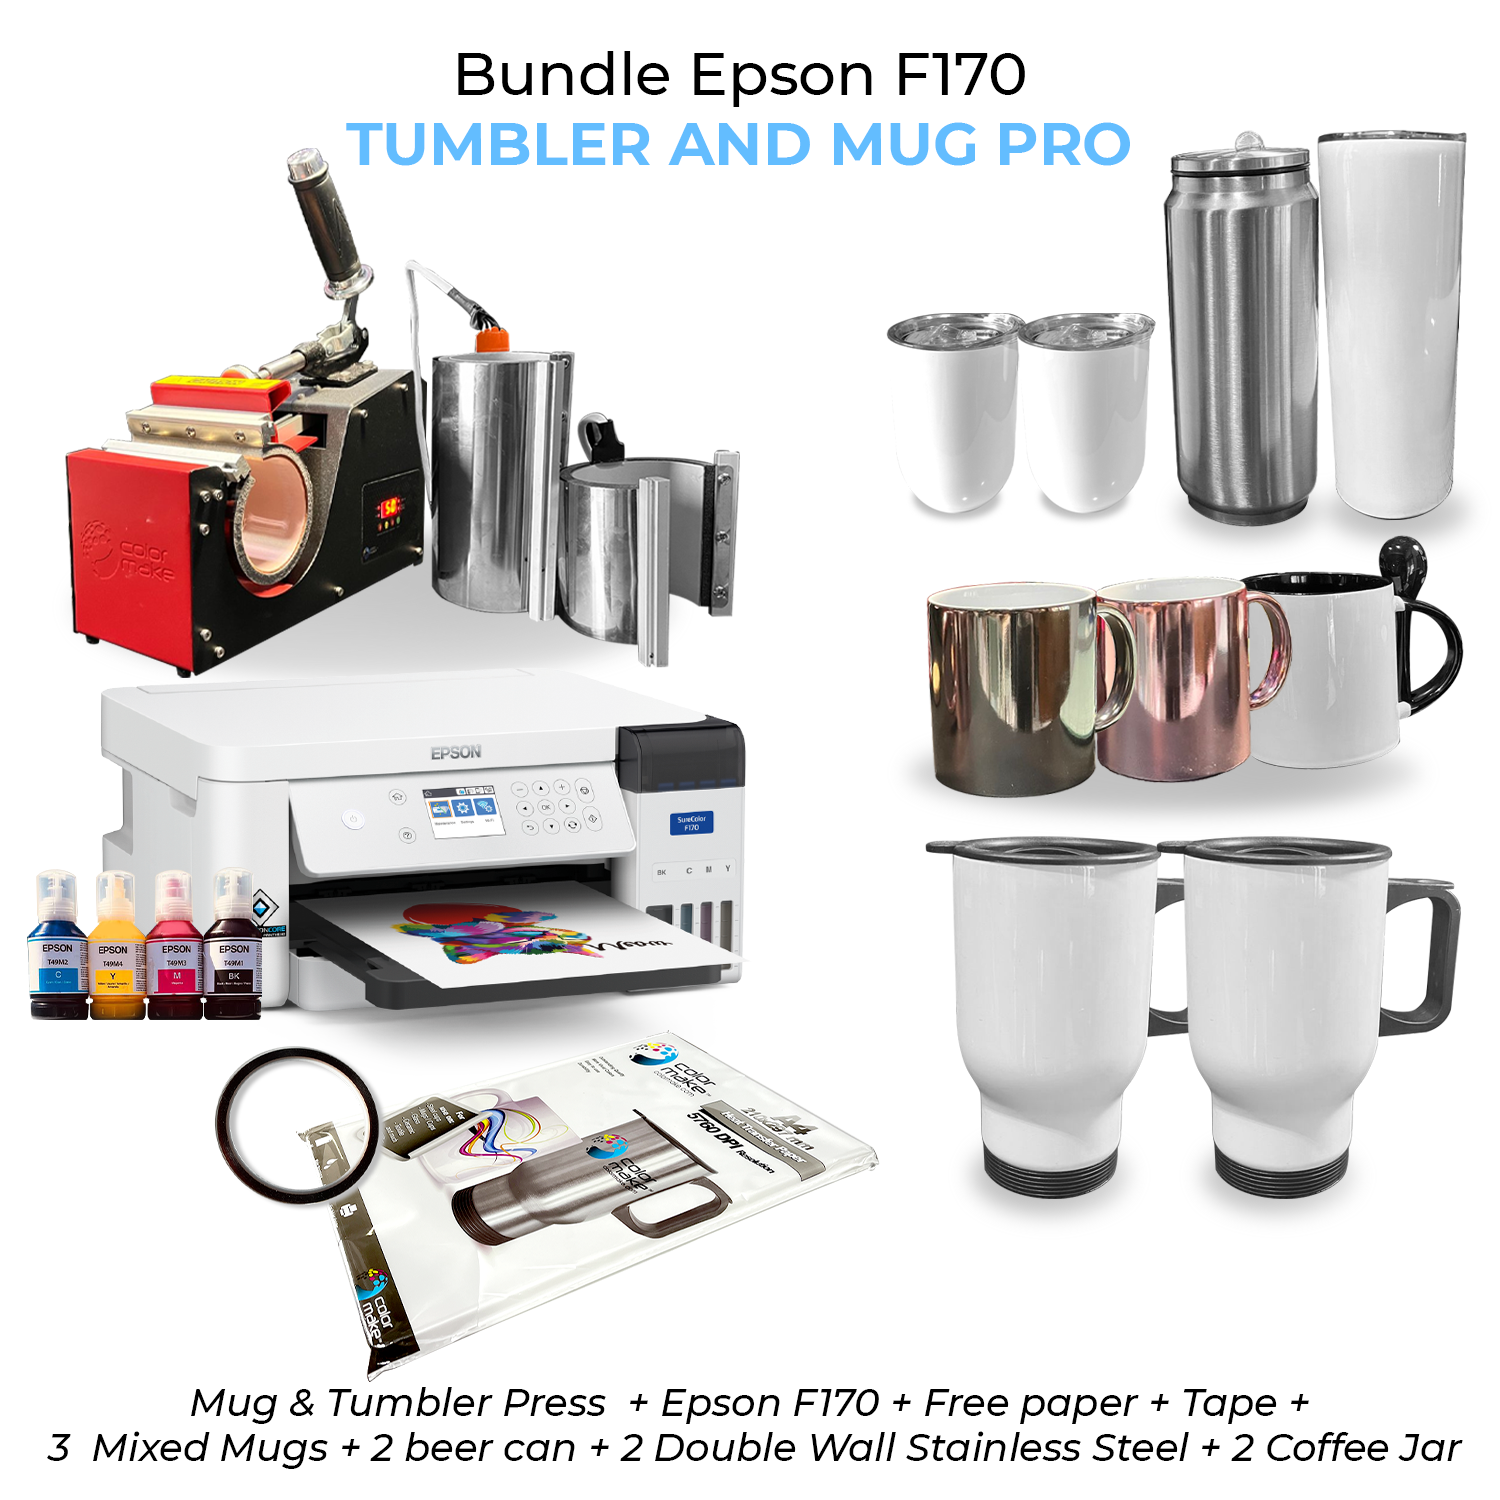 Bundle Epson F170 Tumbler and Mug Pro